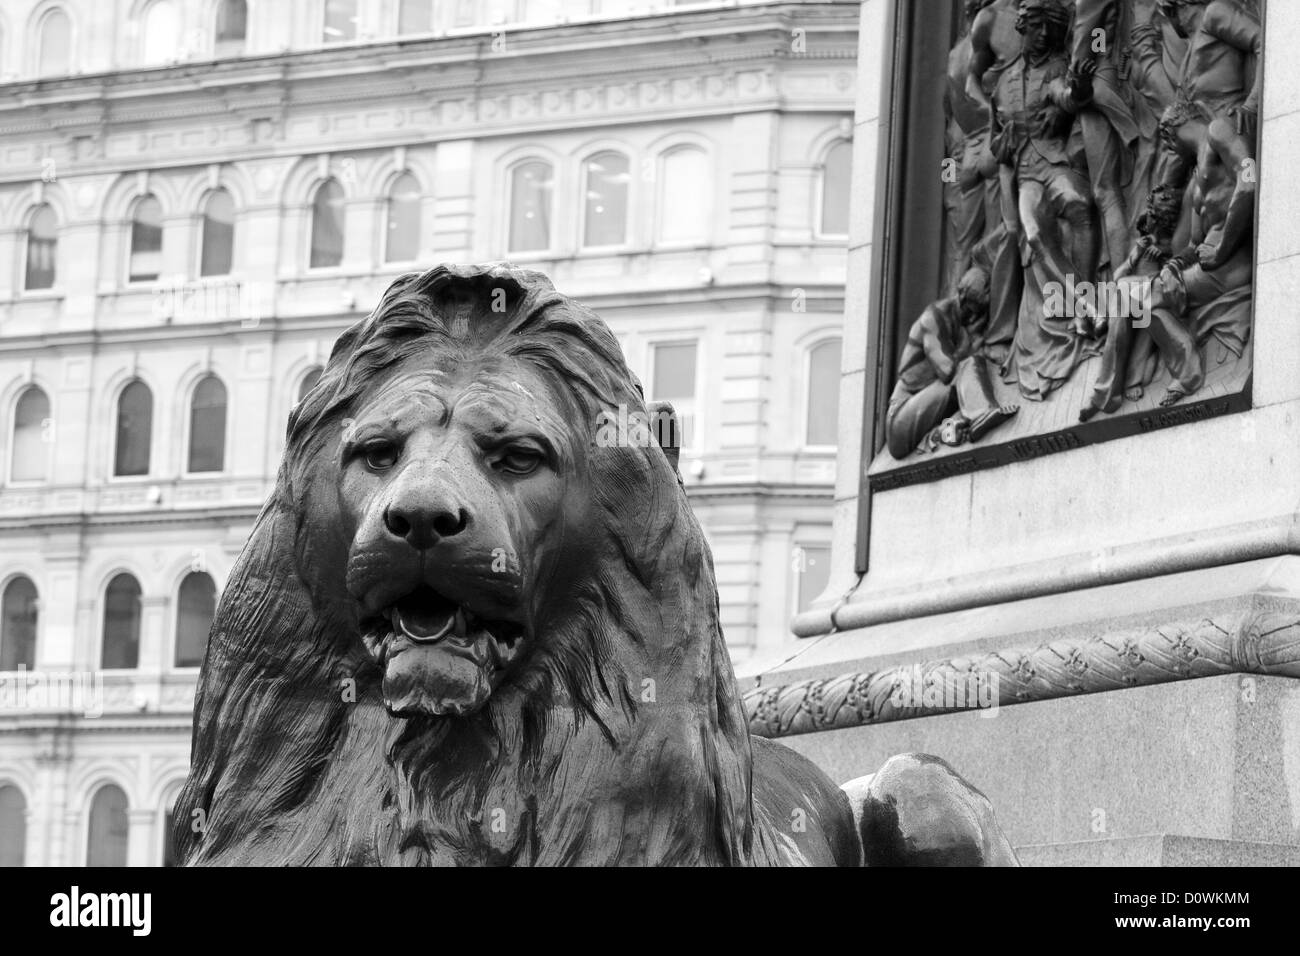 La tête d'une statue de Lion à Trafalgar Square avec des bâtiments en arrière-plan Banque D'Images